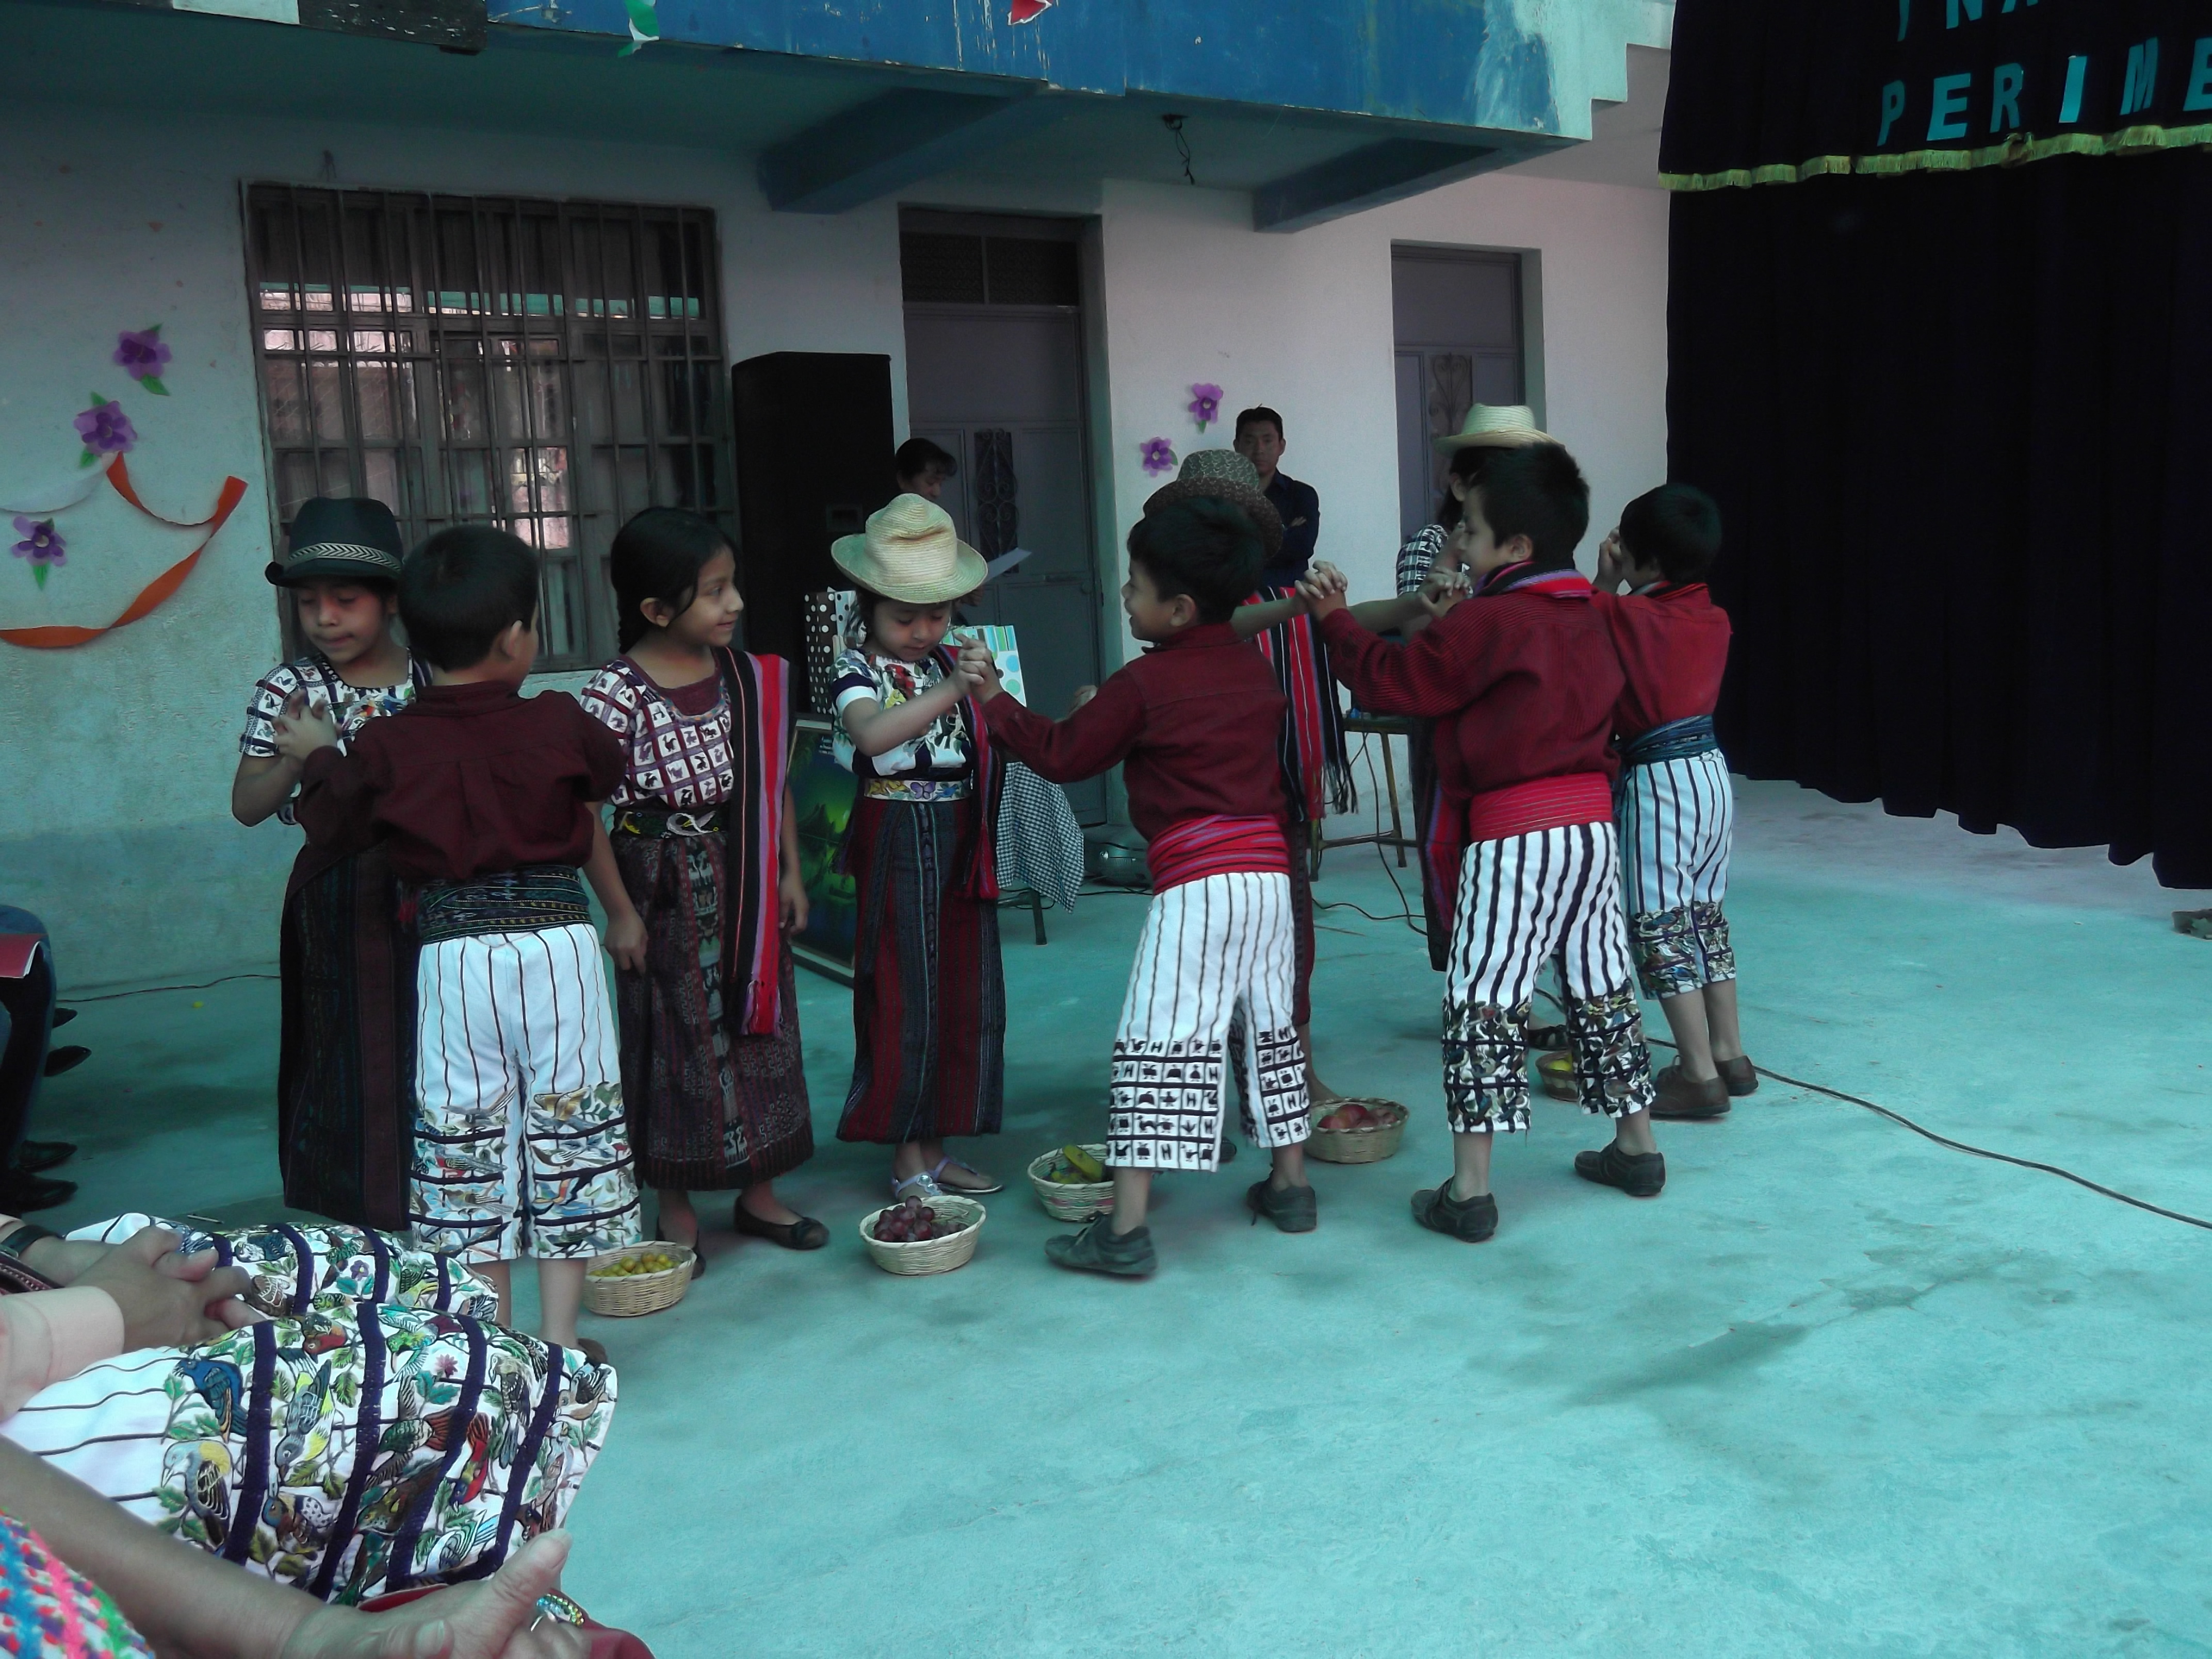 Guatemala kids dancing